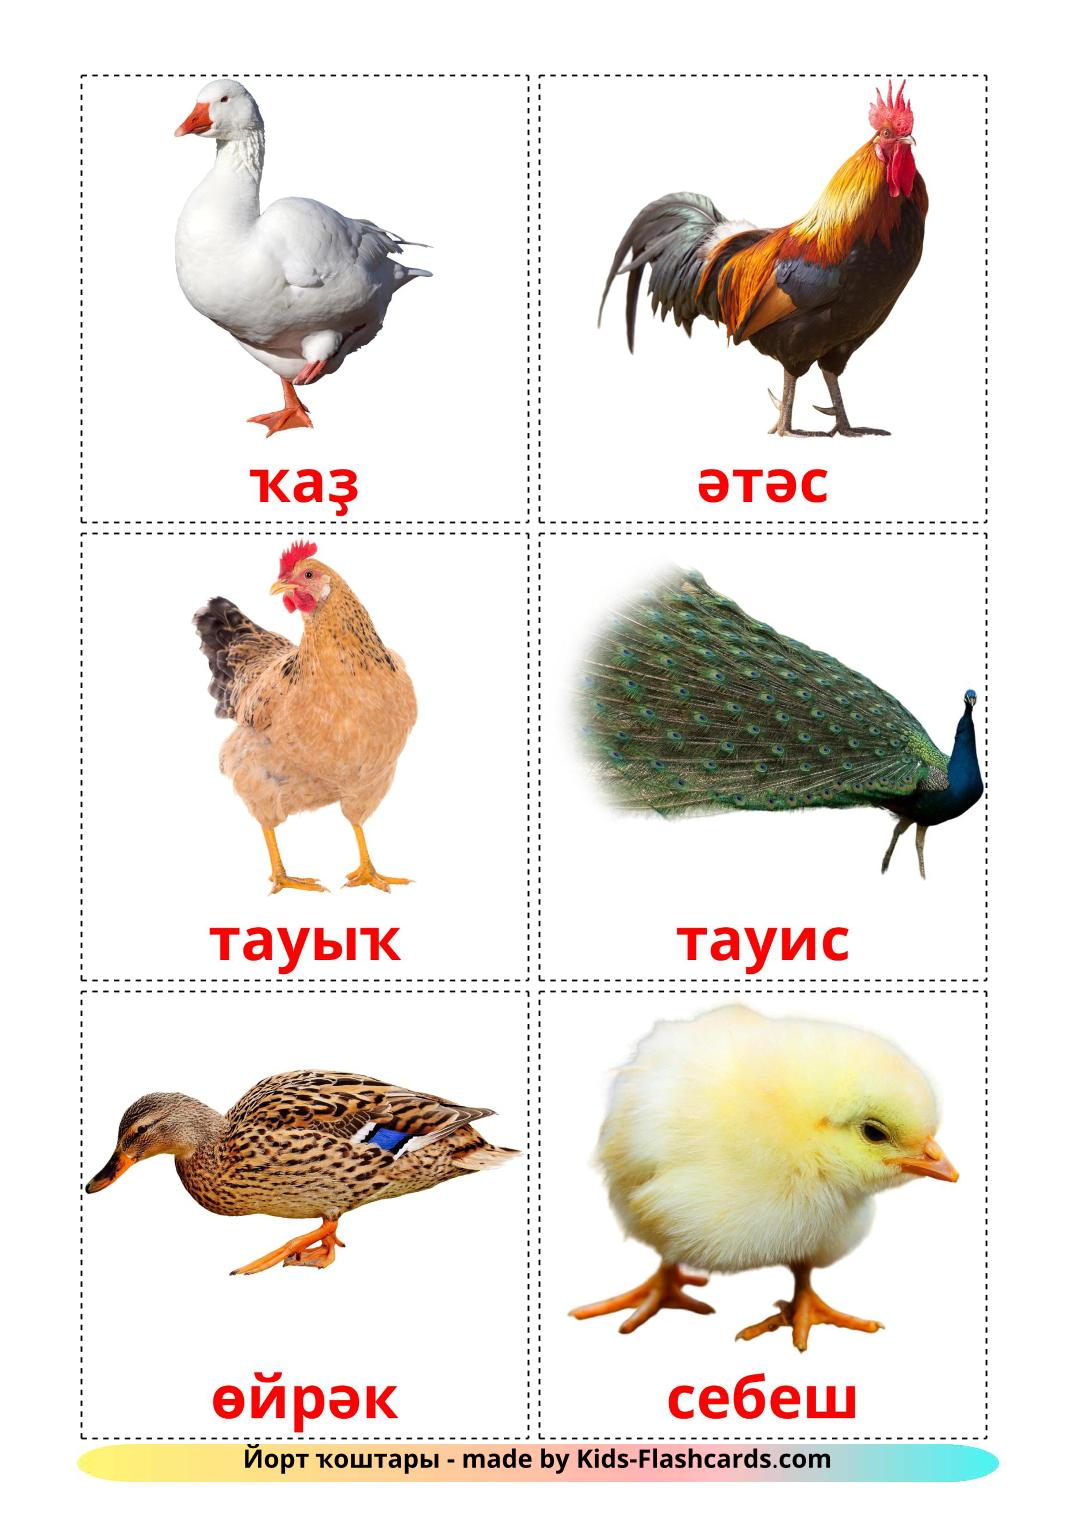 Uccelli di fattoria - 11 flashcards bashkir stampabili gratuitamente